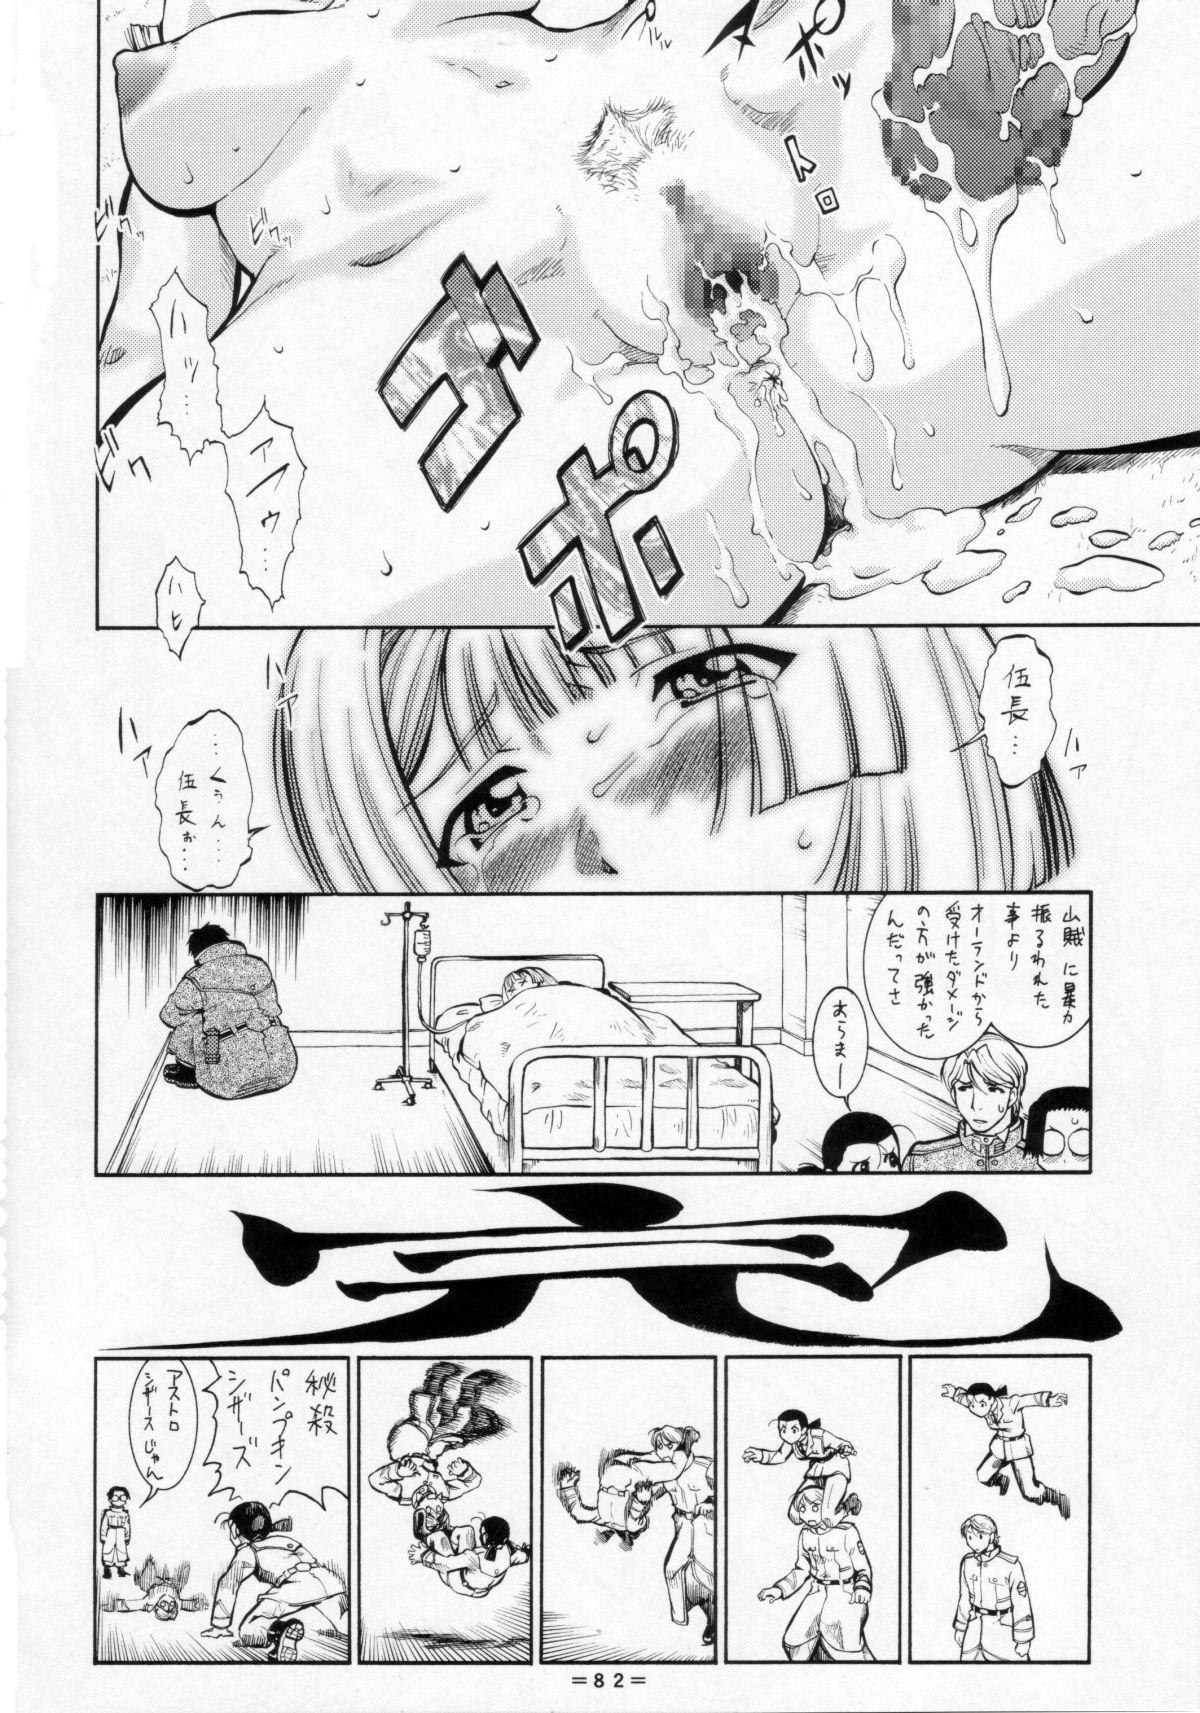 Umeta Manga Shuu 11 -nin iru! 80